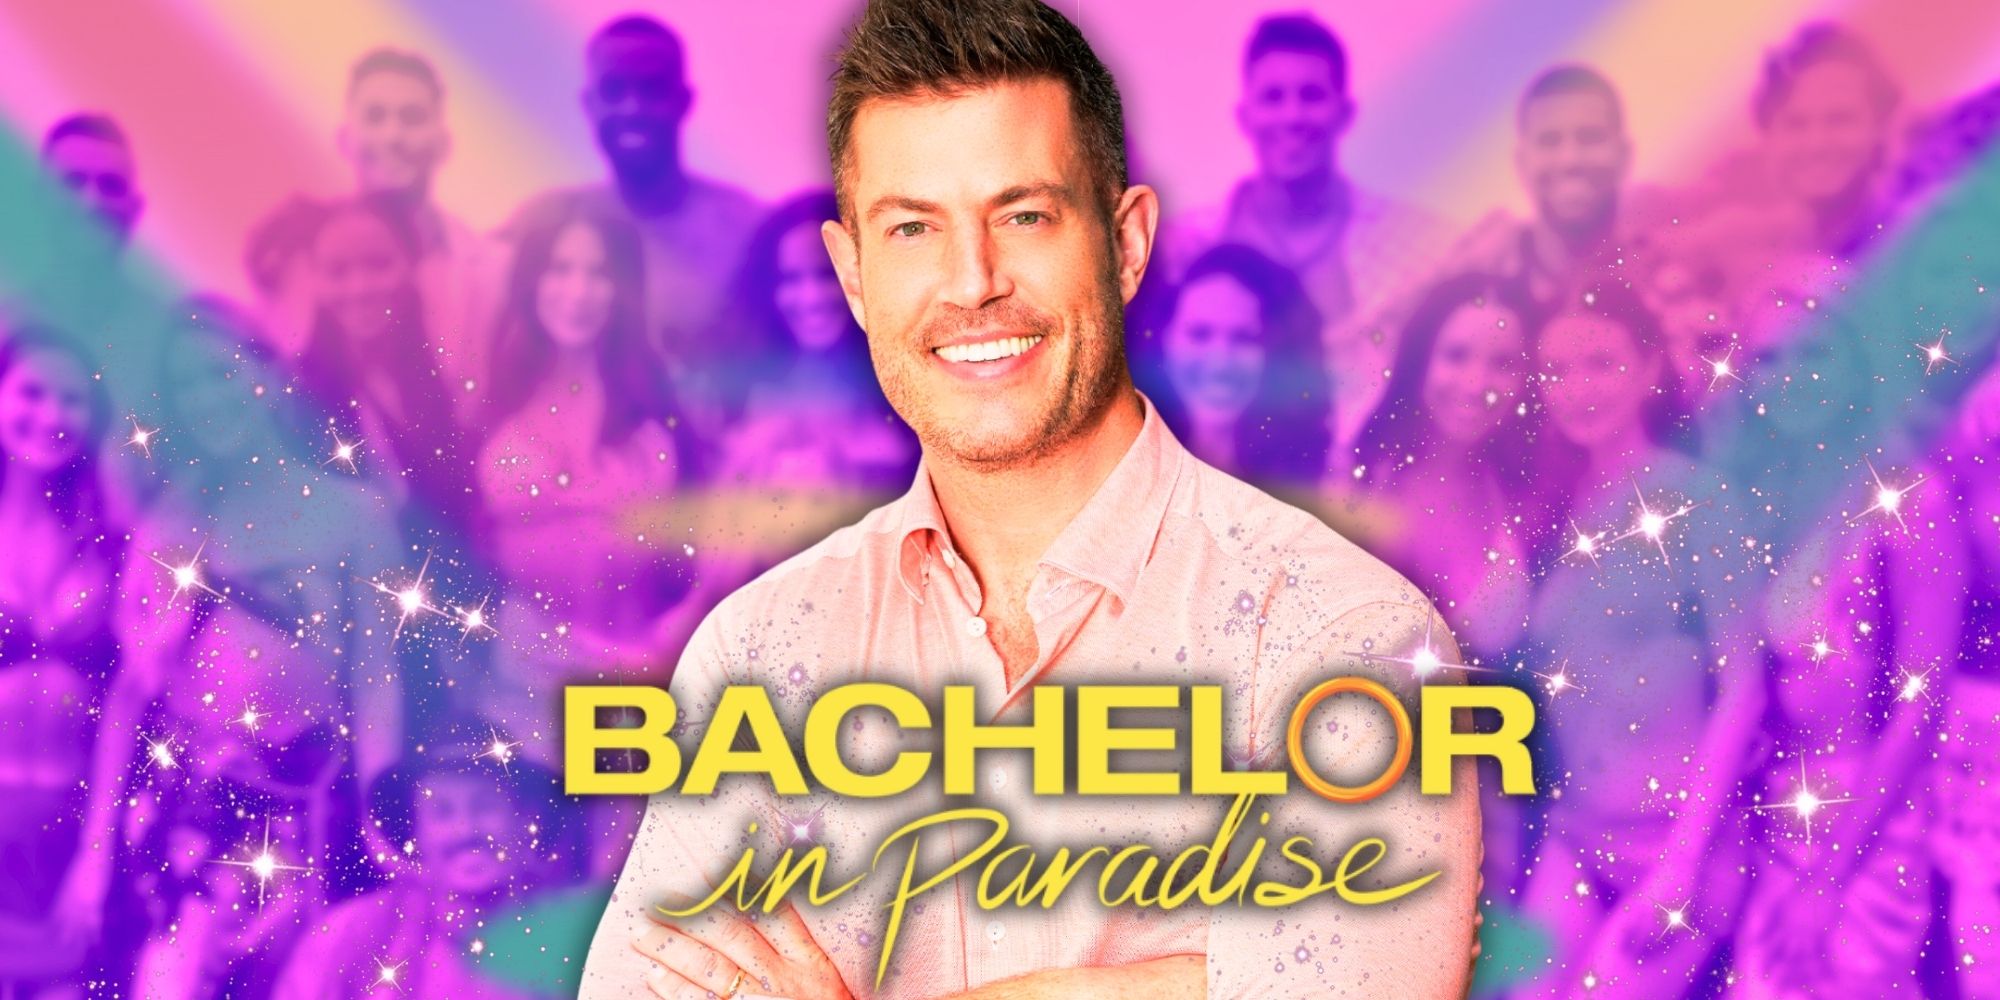 bachelor in paradise (season 5)